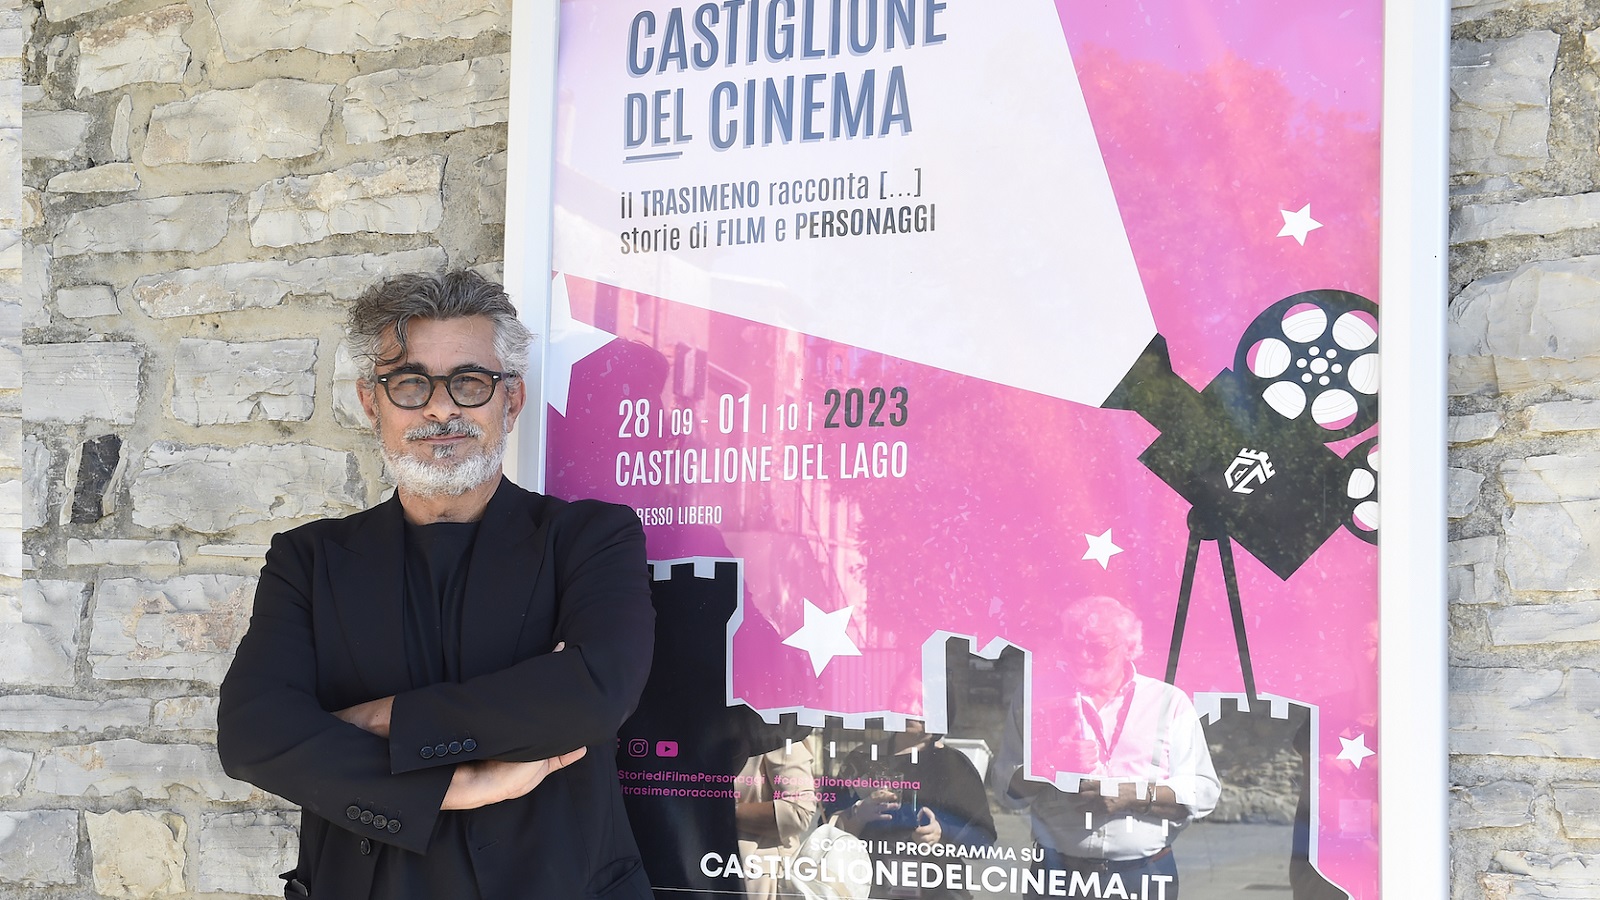 Paolo Genovese a Castiglione del Cinema: “Il cameo di Call My Agent non lo volevo fare'